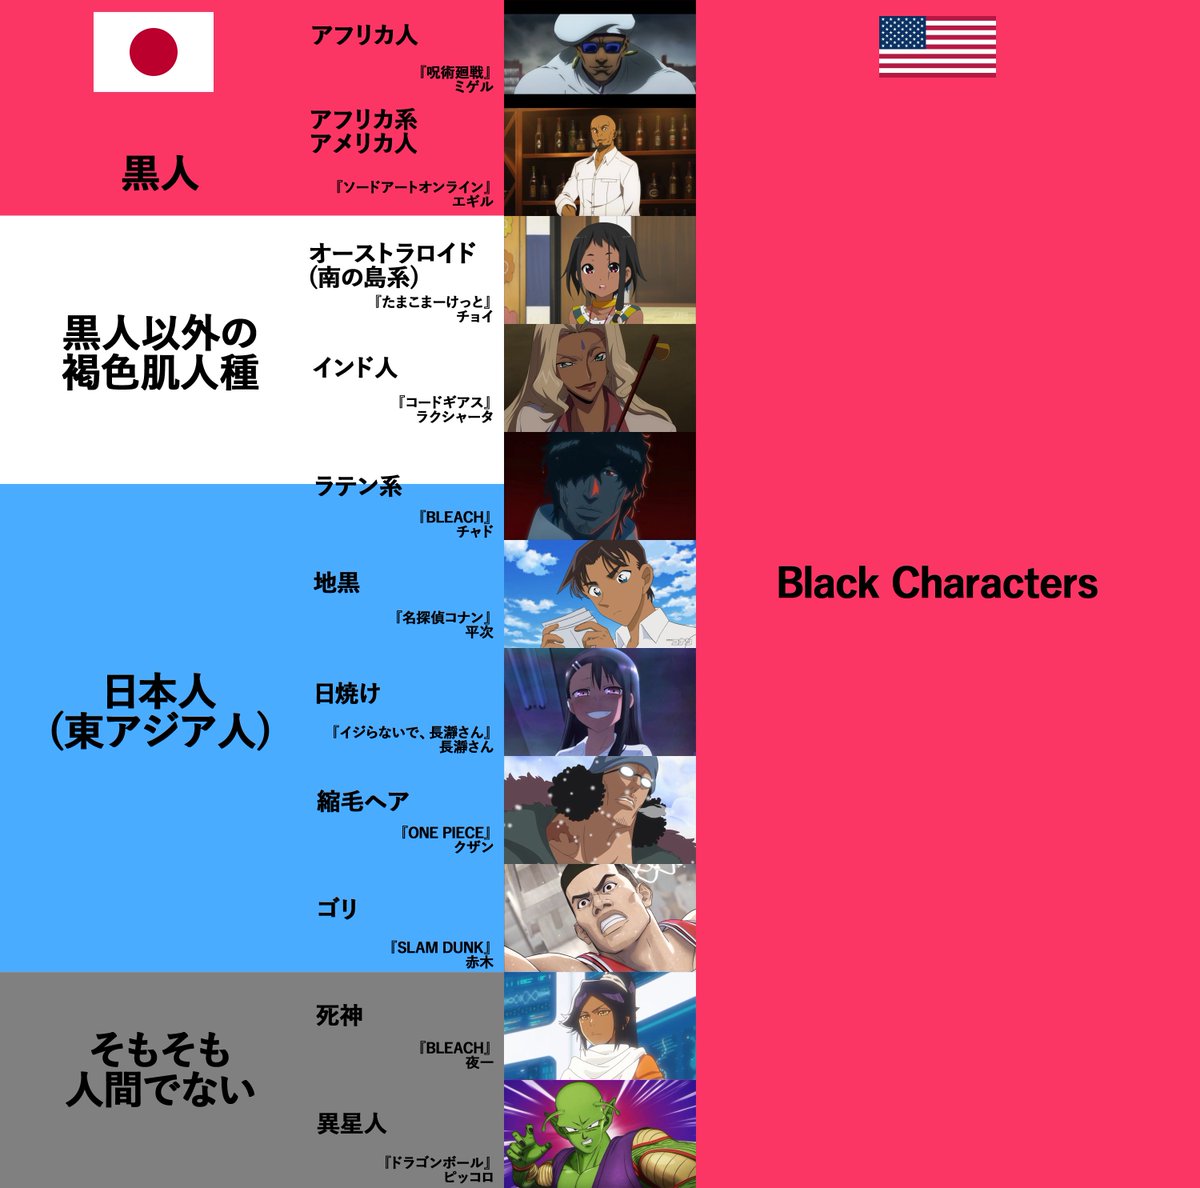 件の画像にはコメントしないが、この非対称性はガチです。アメリカ人(のみならず海外全般。もちろんアフリカ系当事者がその筆頭)にとっての「Black character」は日本語の「黒人キャラ」とは違う